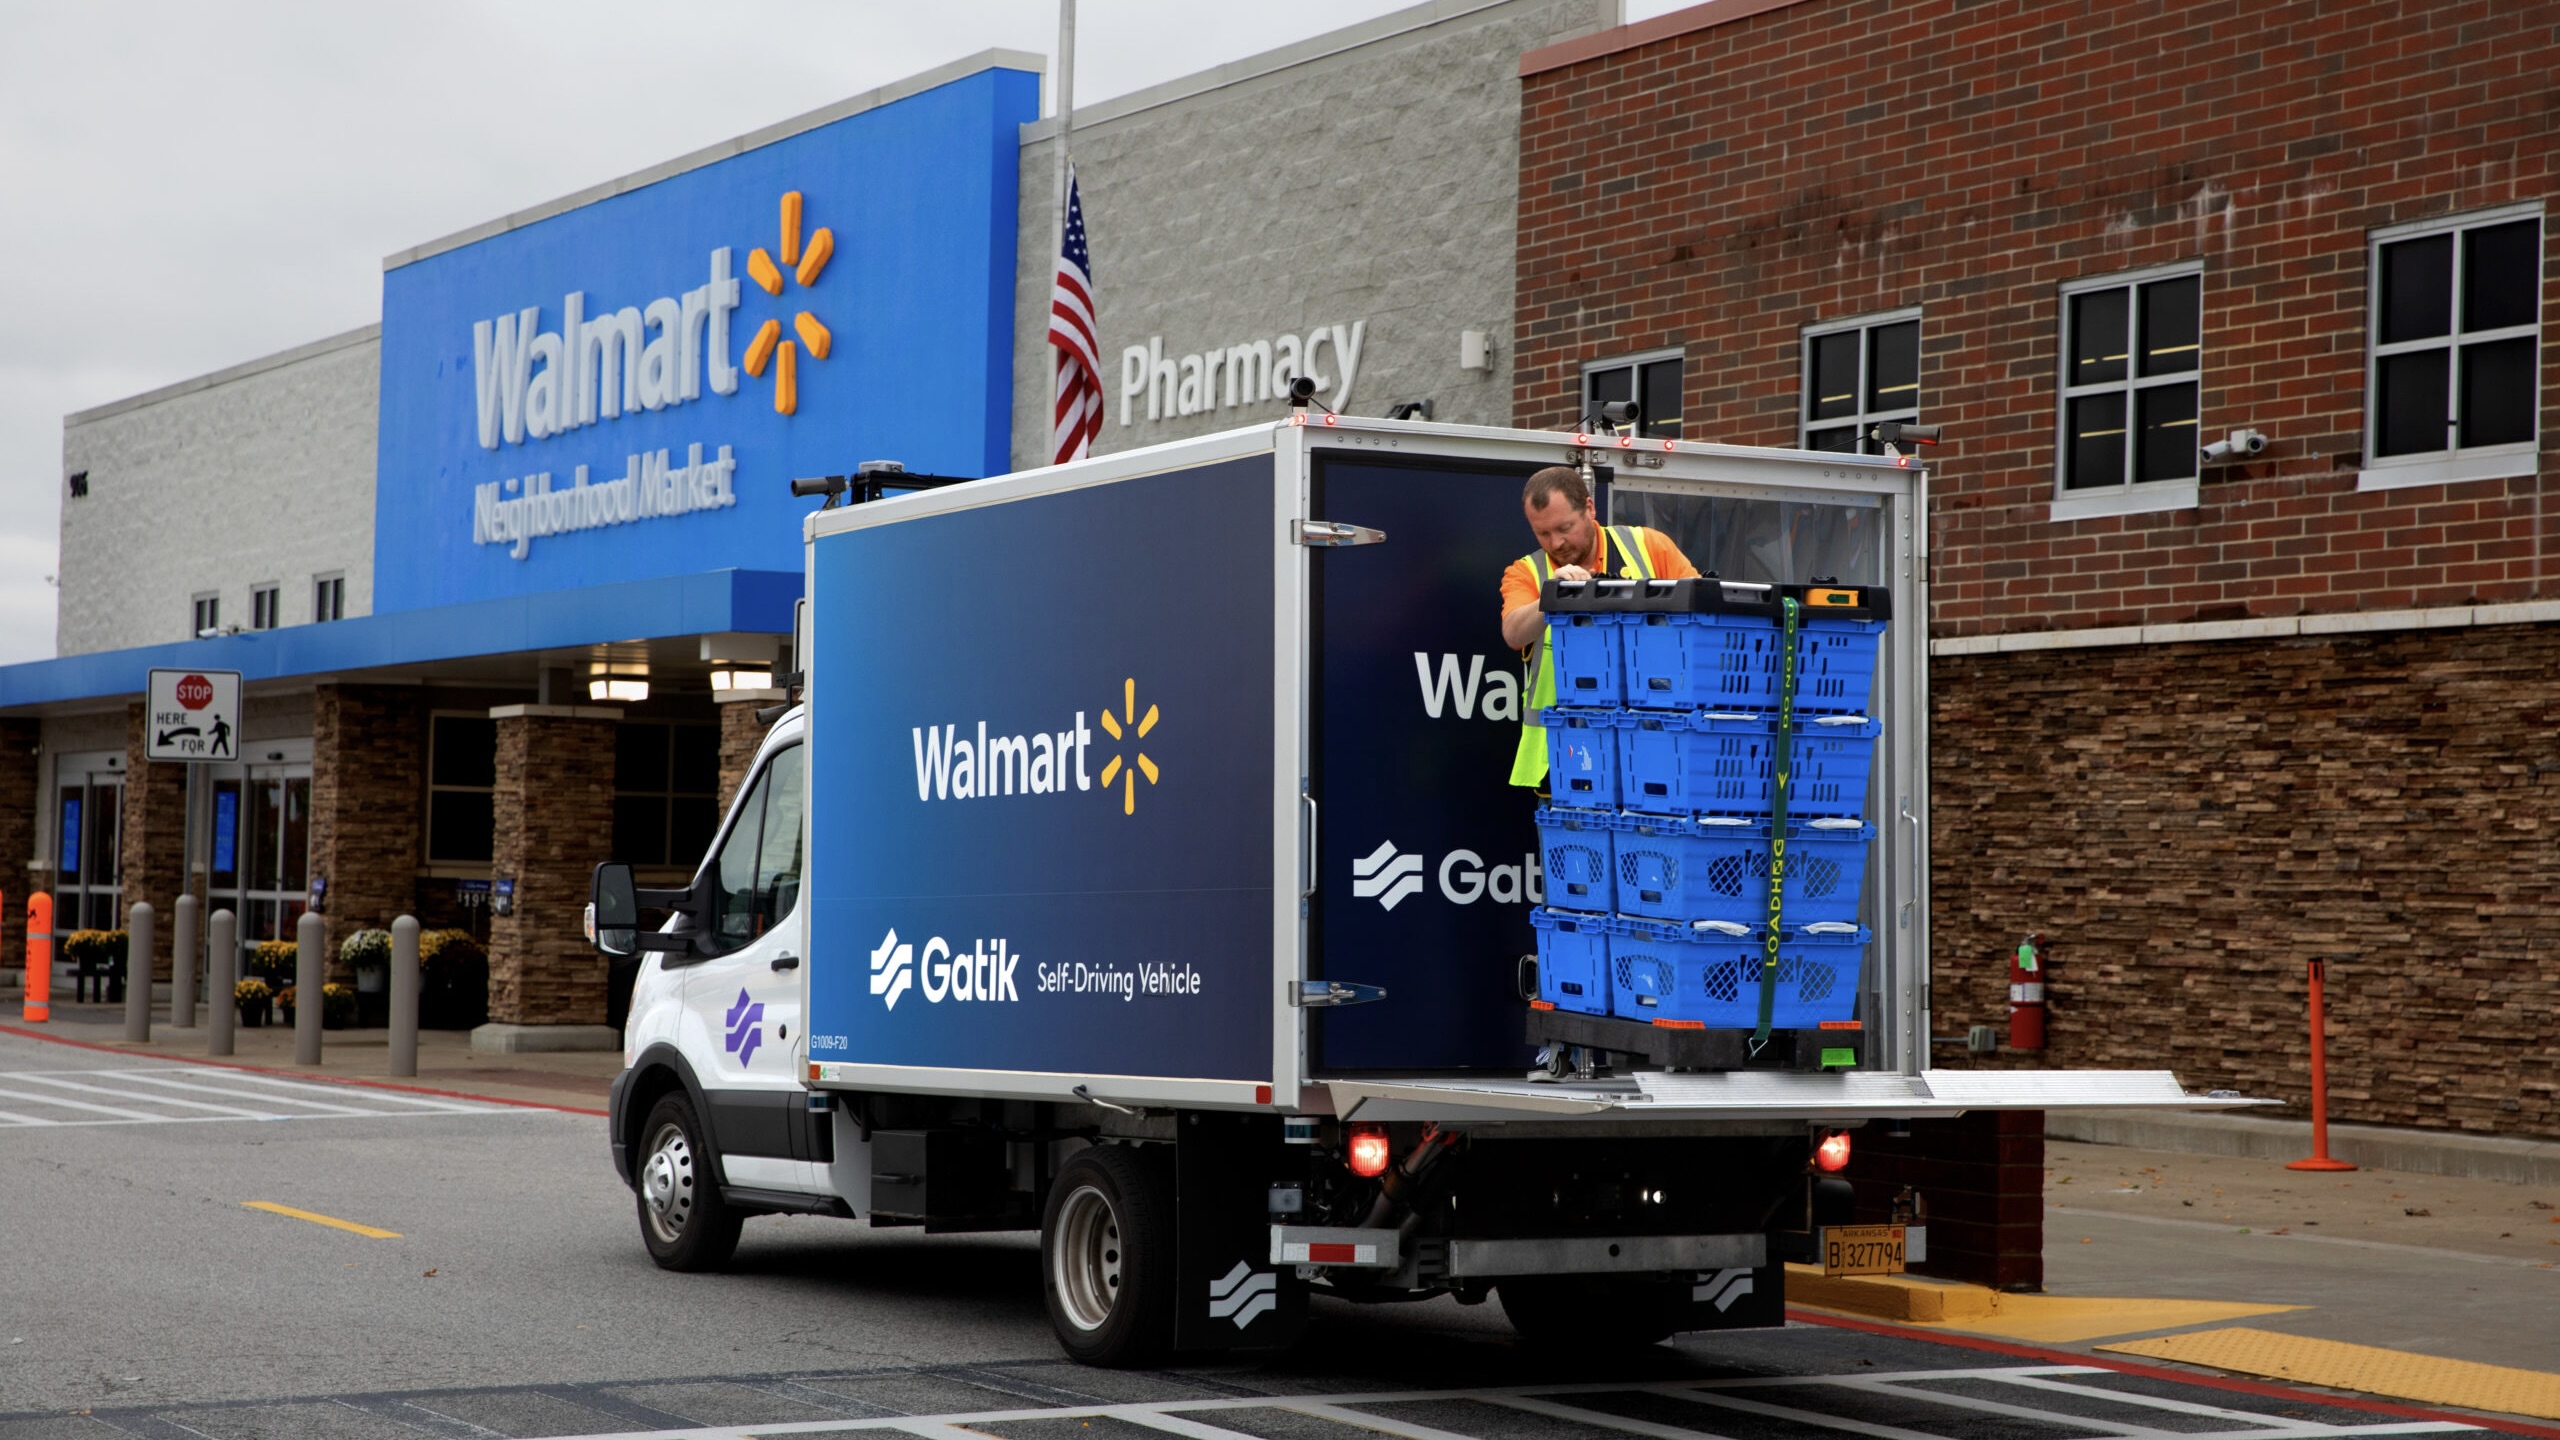 Gatik and Walmart Partner to Enable AV Legislation in Kansas